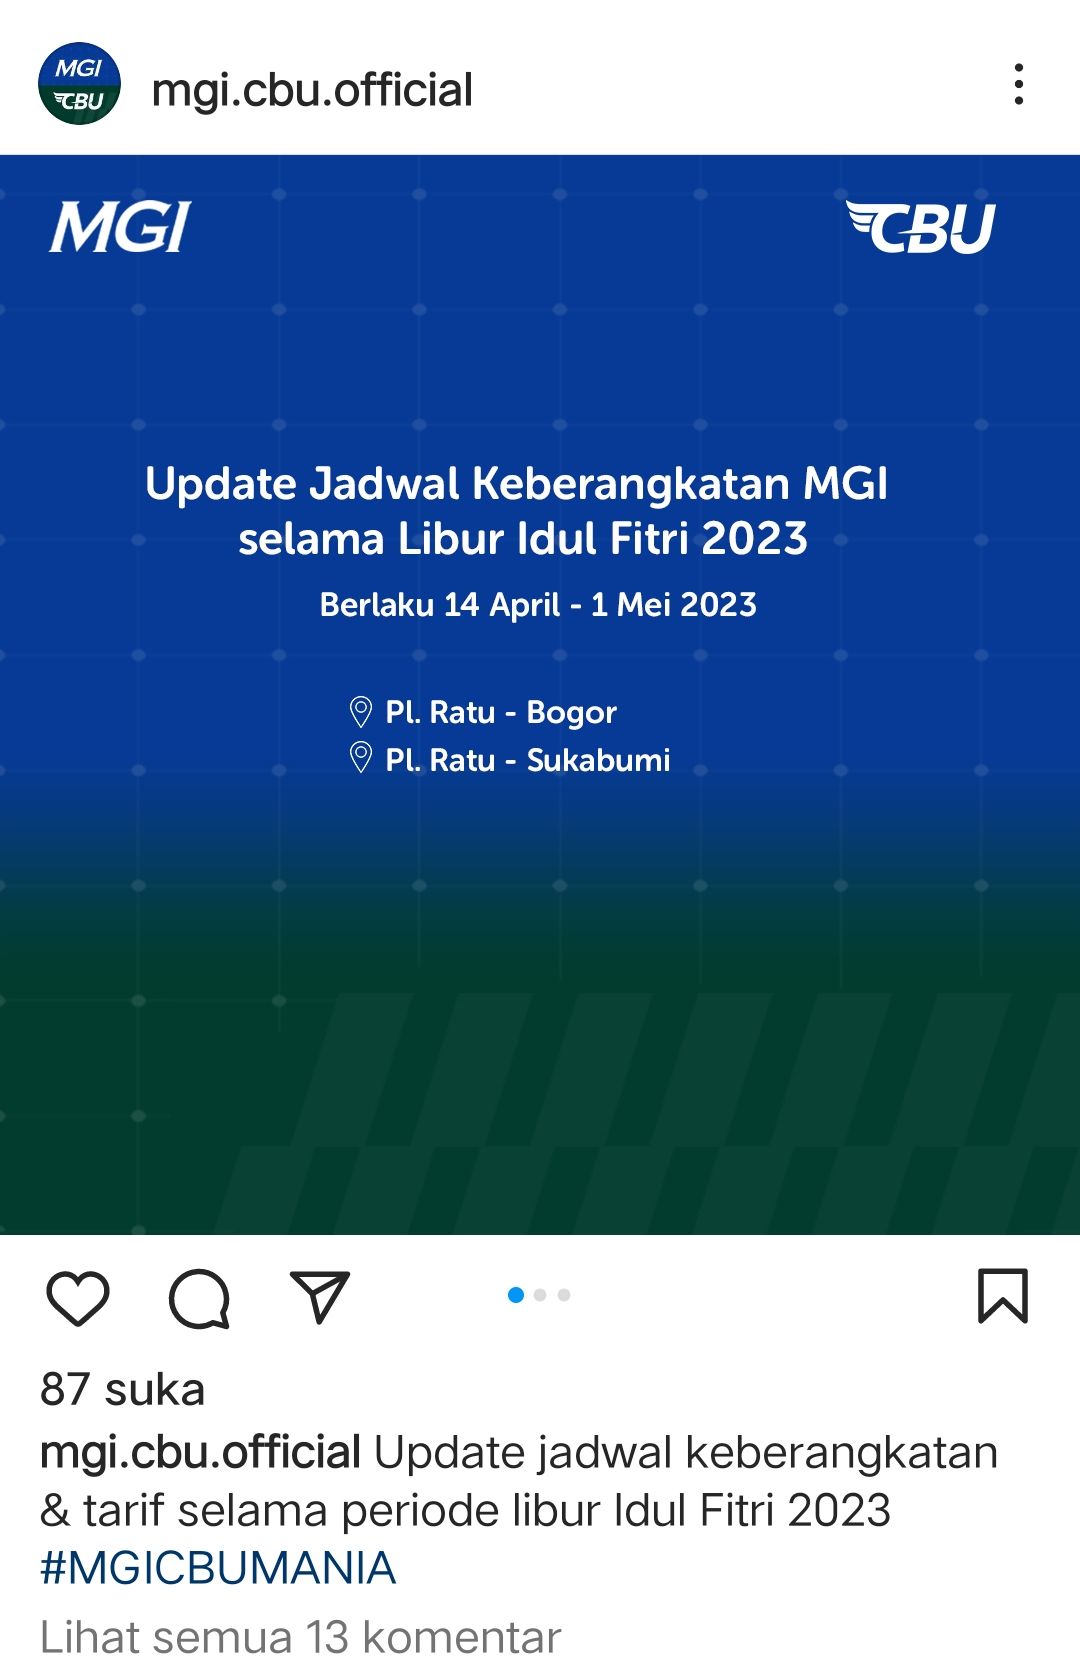 Update jadwal keberangkatan bis MGI area Palabuhanratu, Sukabumi dan Bogor 